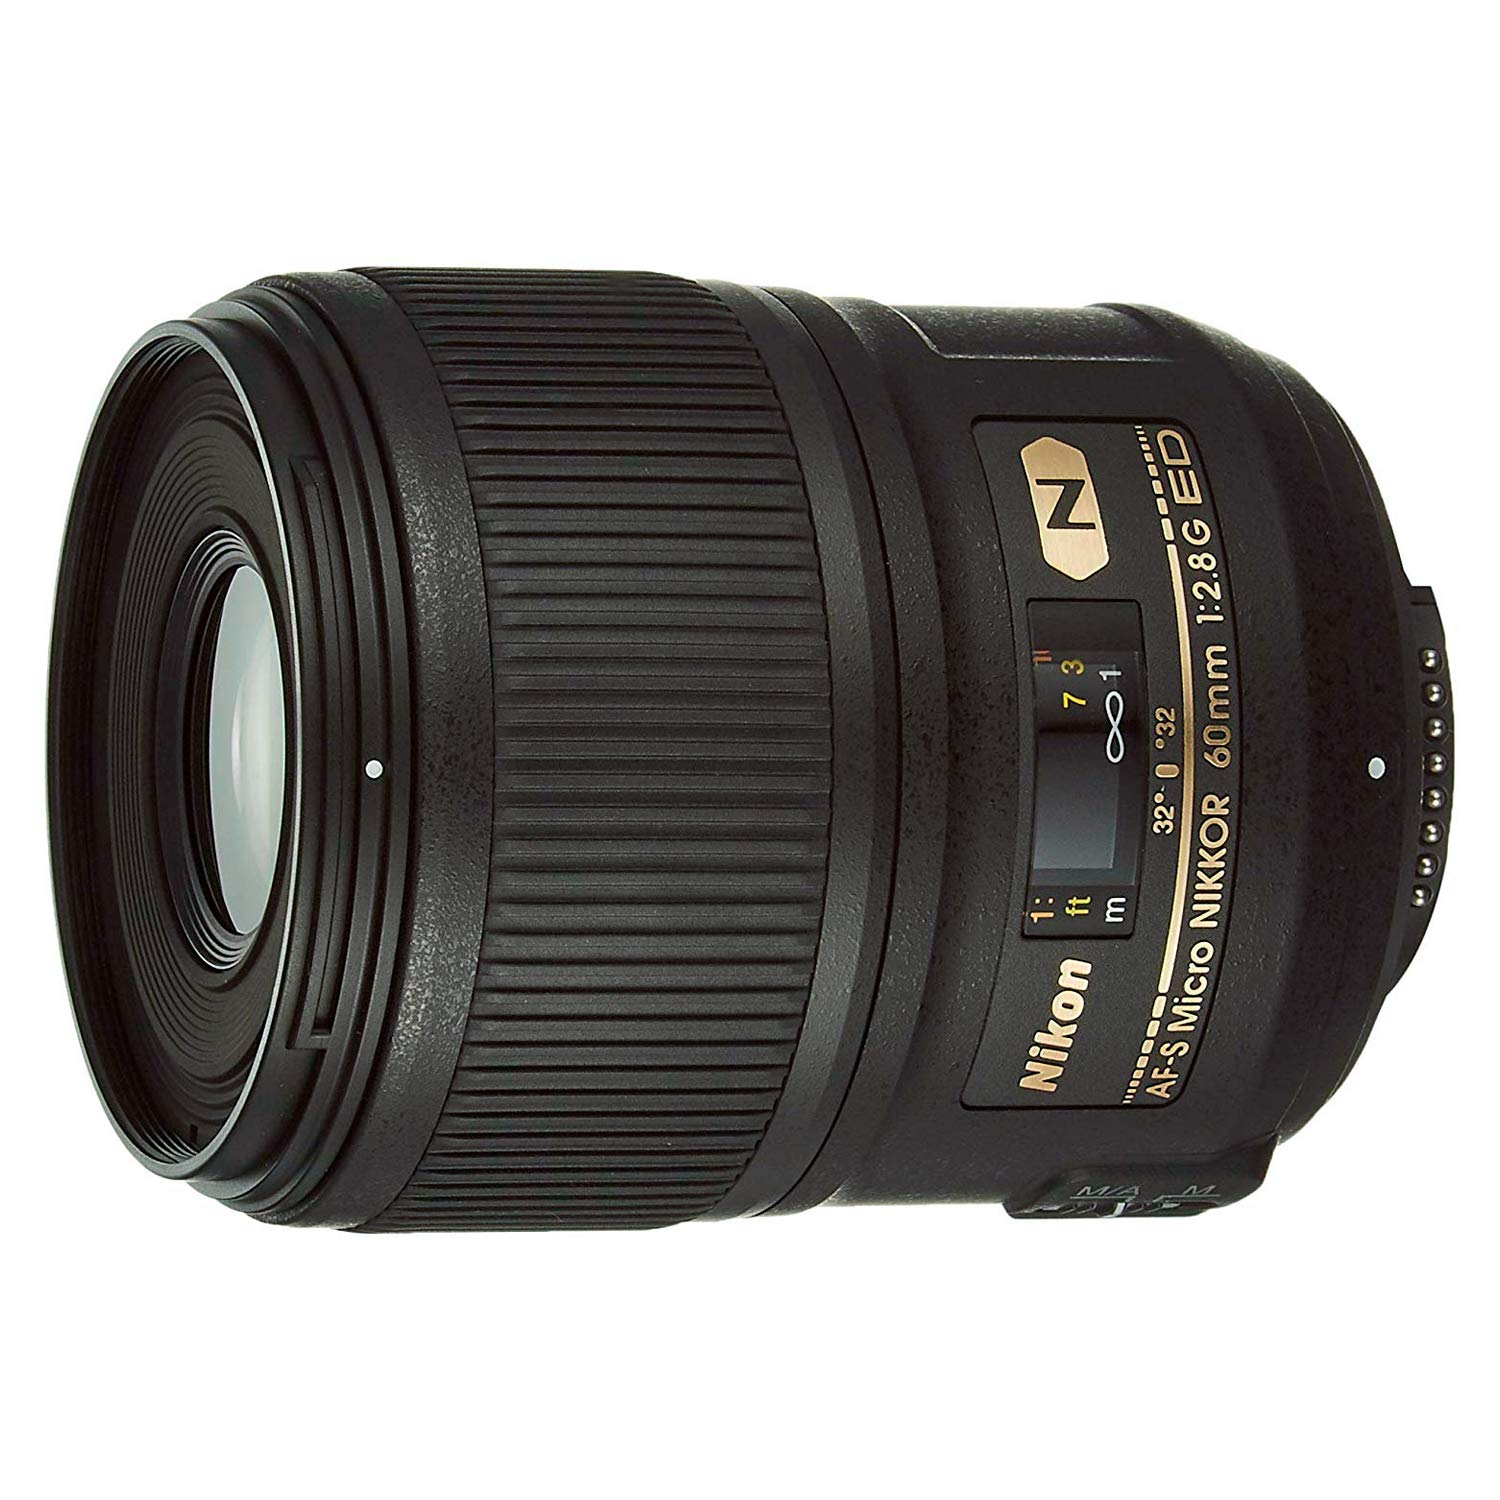 Nikon DSLR कैमरा के लिए Nikon AF-S Nikkor 60mm F/2.8G ED प्राइम लेंस